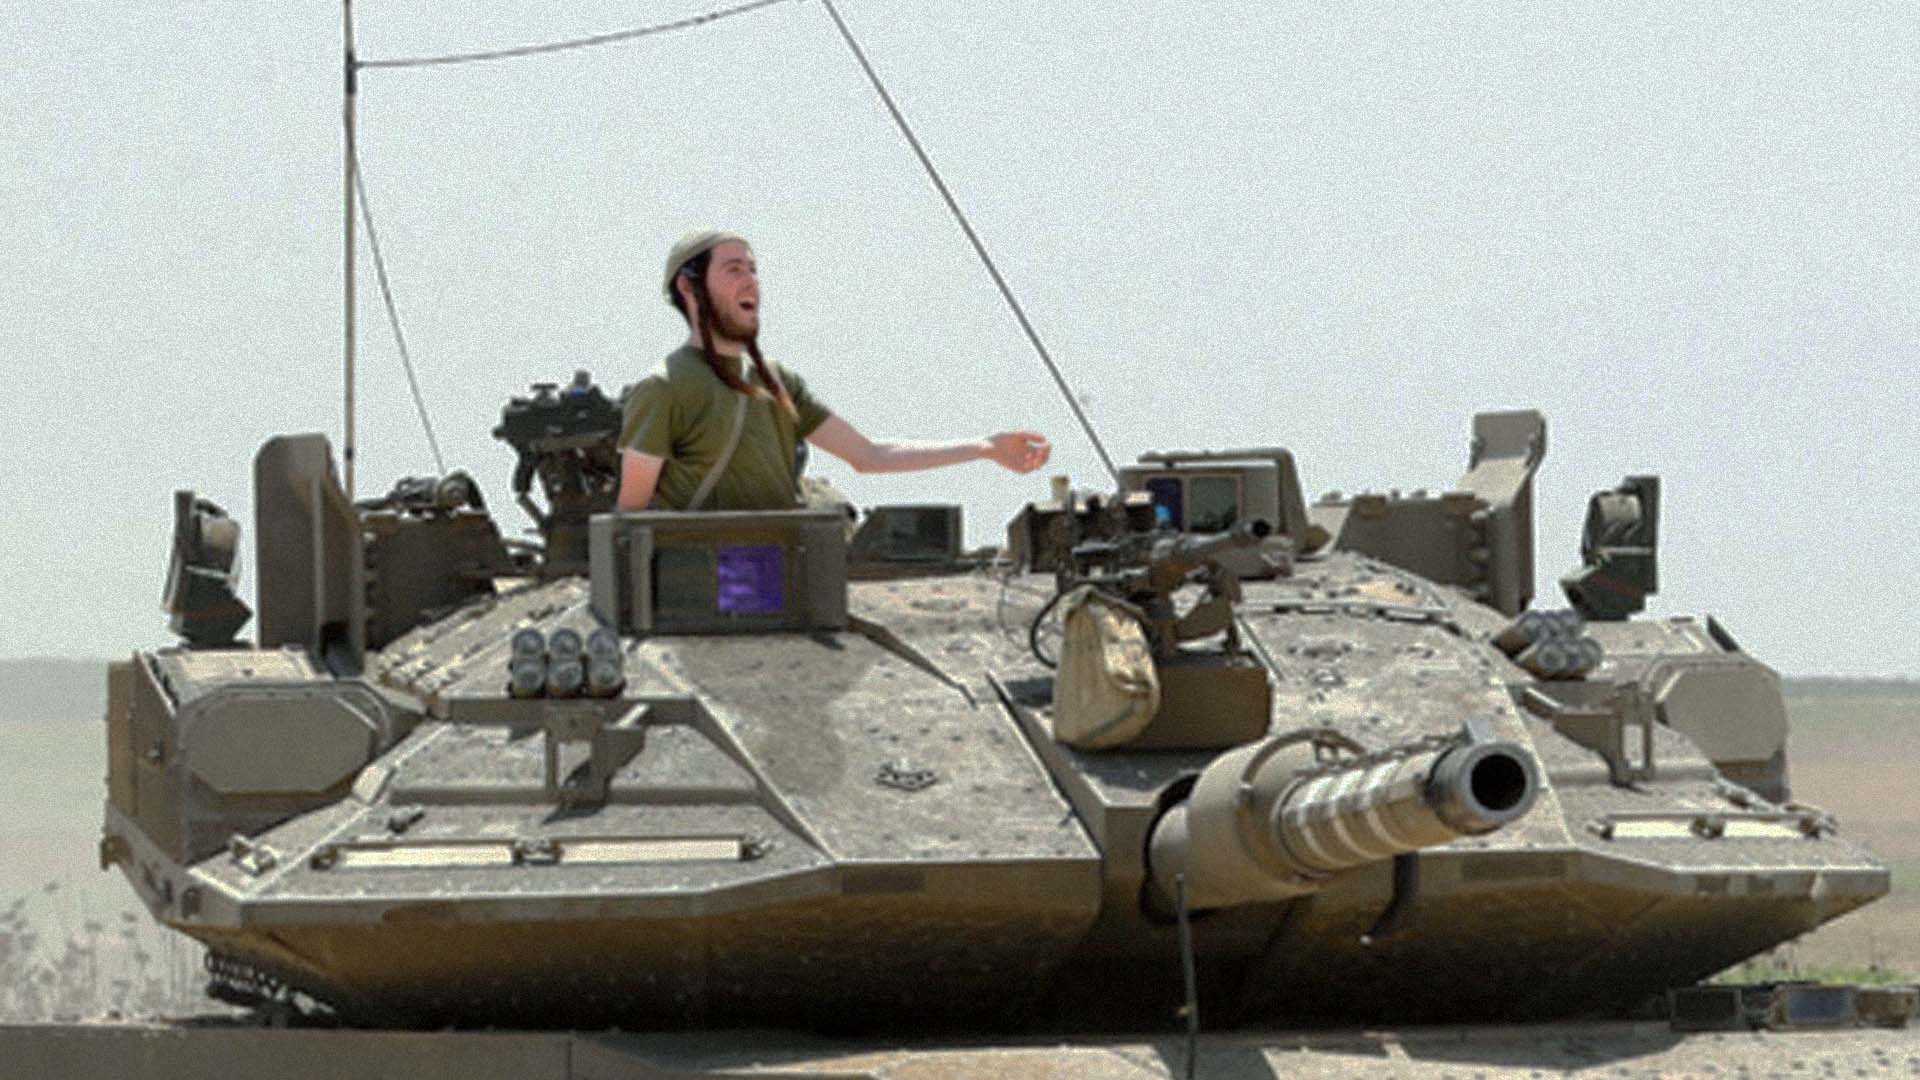 صورة مستوطنون يؤكدون على حقهم الشرعي كمدنيين بالتنقل على متن الدبابات